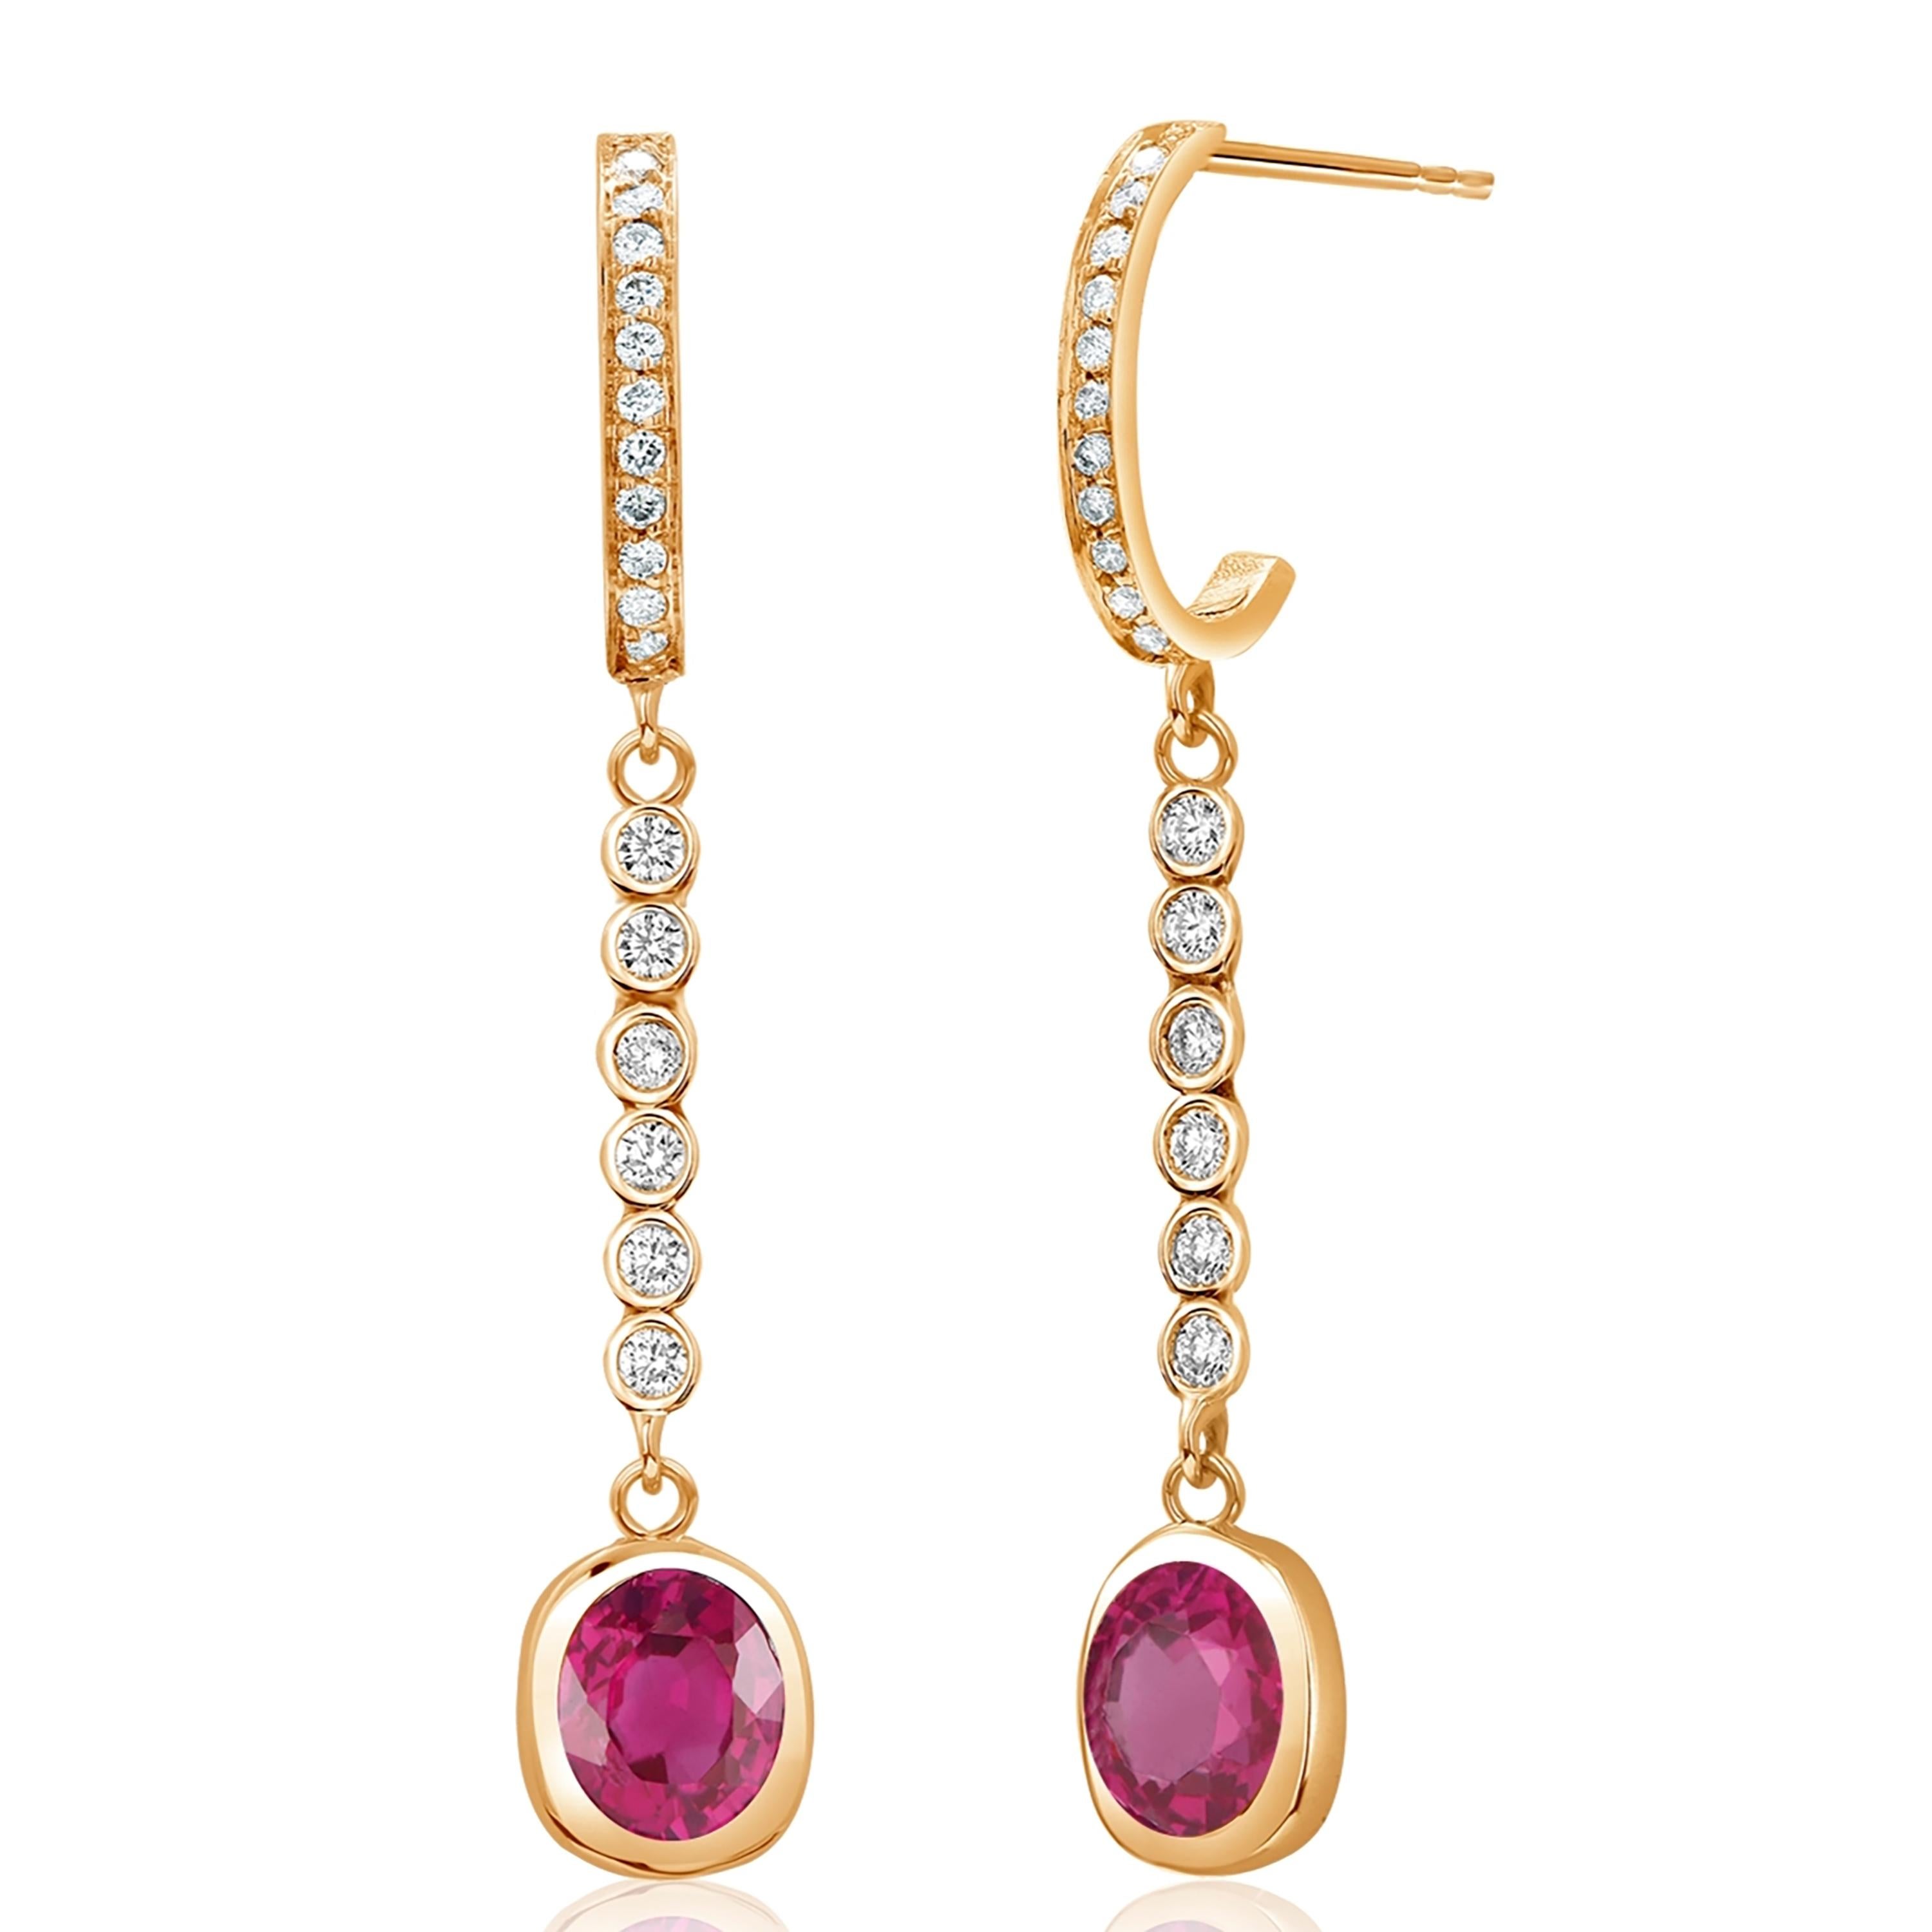 Women's or Men's Bezel Set Burma Ruby Diamond 1.75 Carat 1.6 Inch Long Yellow Gold Earrings For Sale